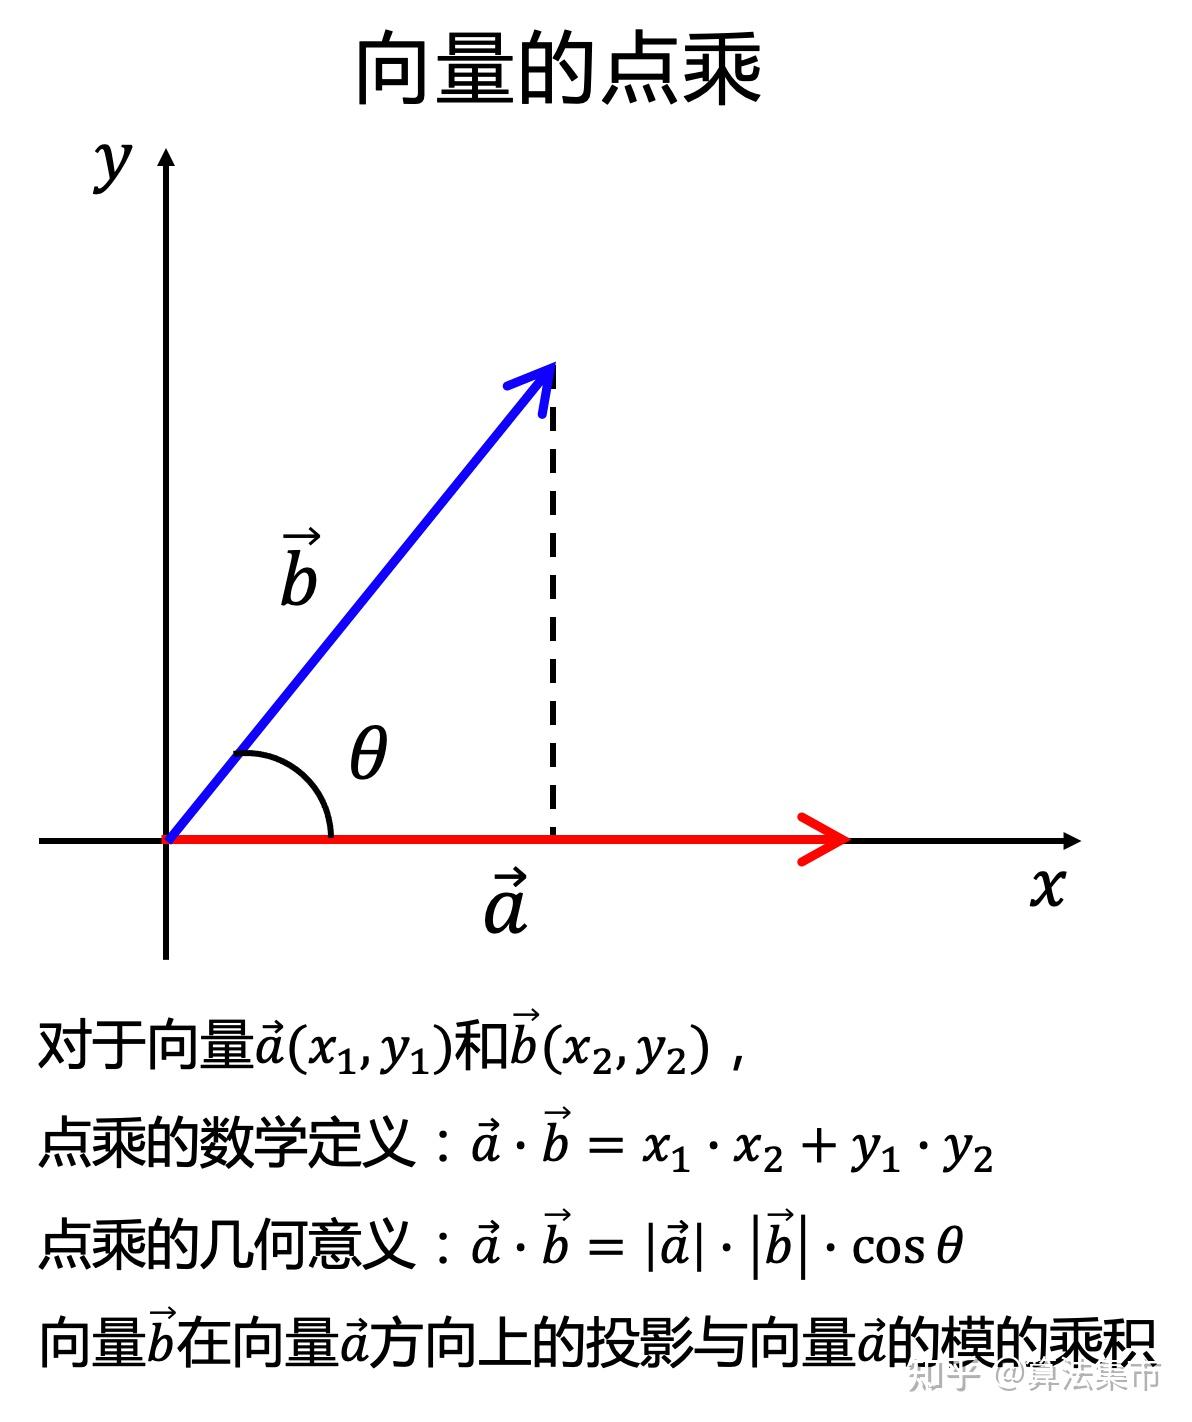 还需要先理解向量点乘的数学定义和几何意义,如下图所示,若 a 向量为